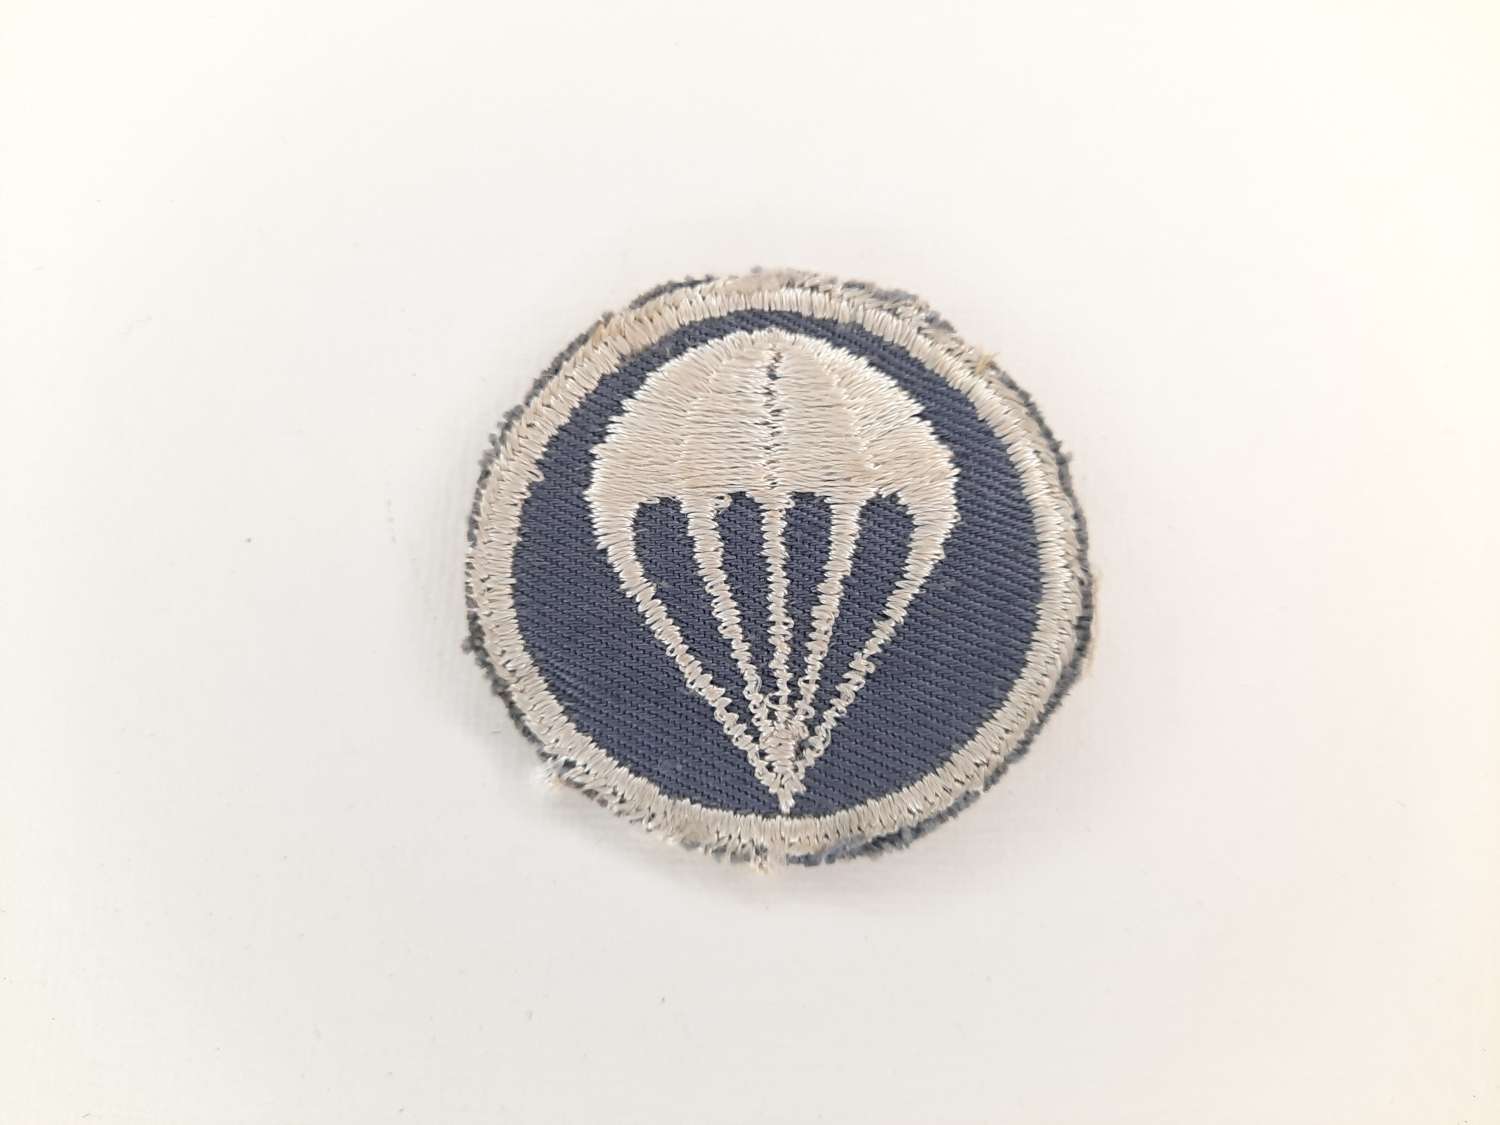 WW2 US Army Airborne Infantry Cap Patch